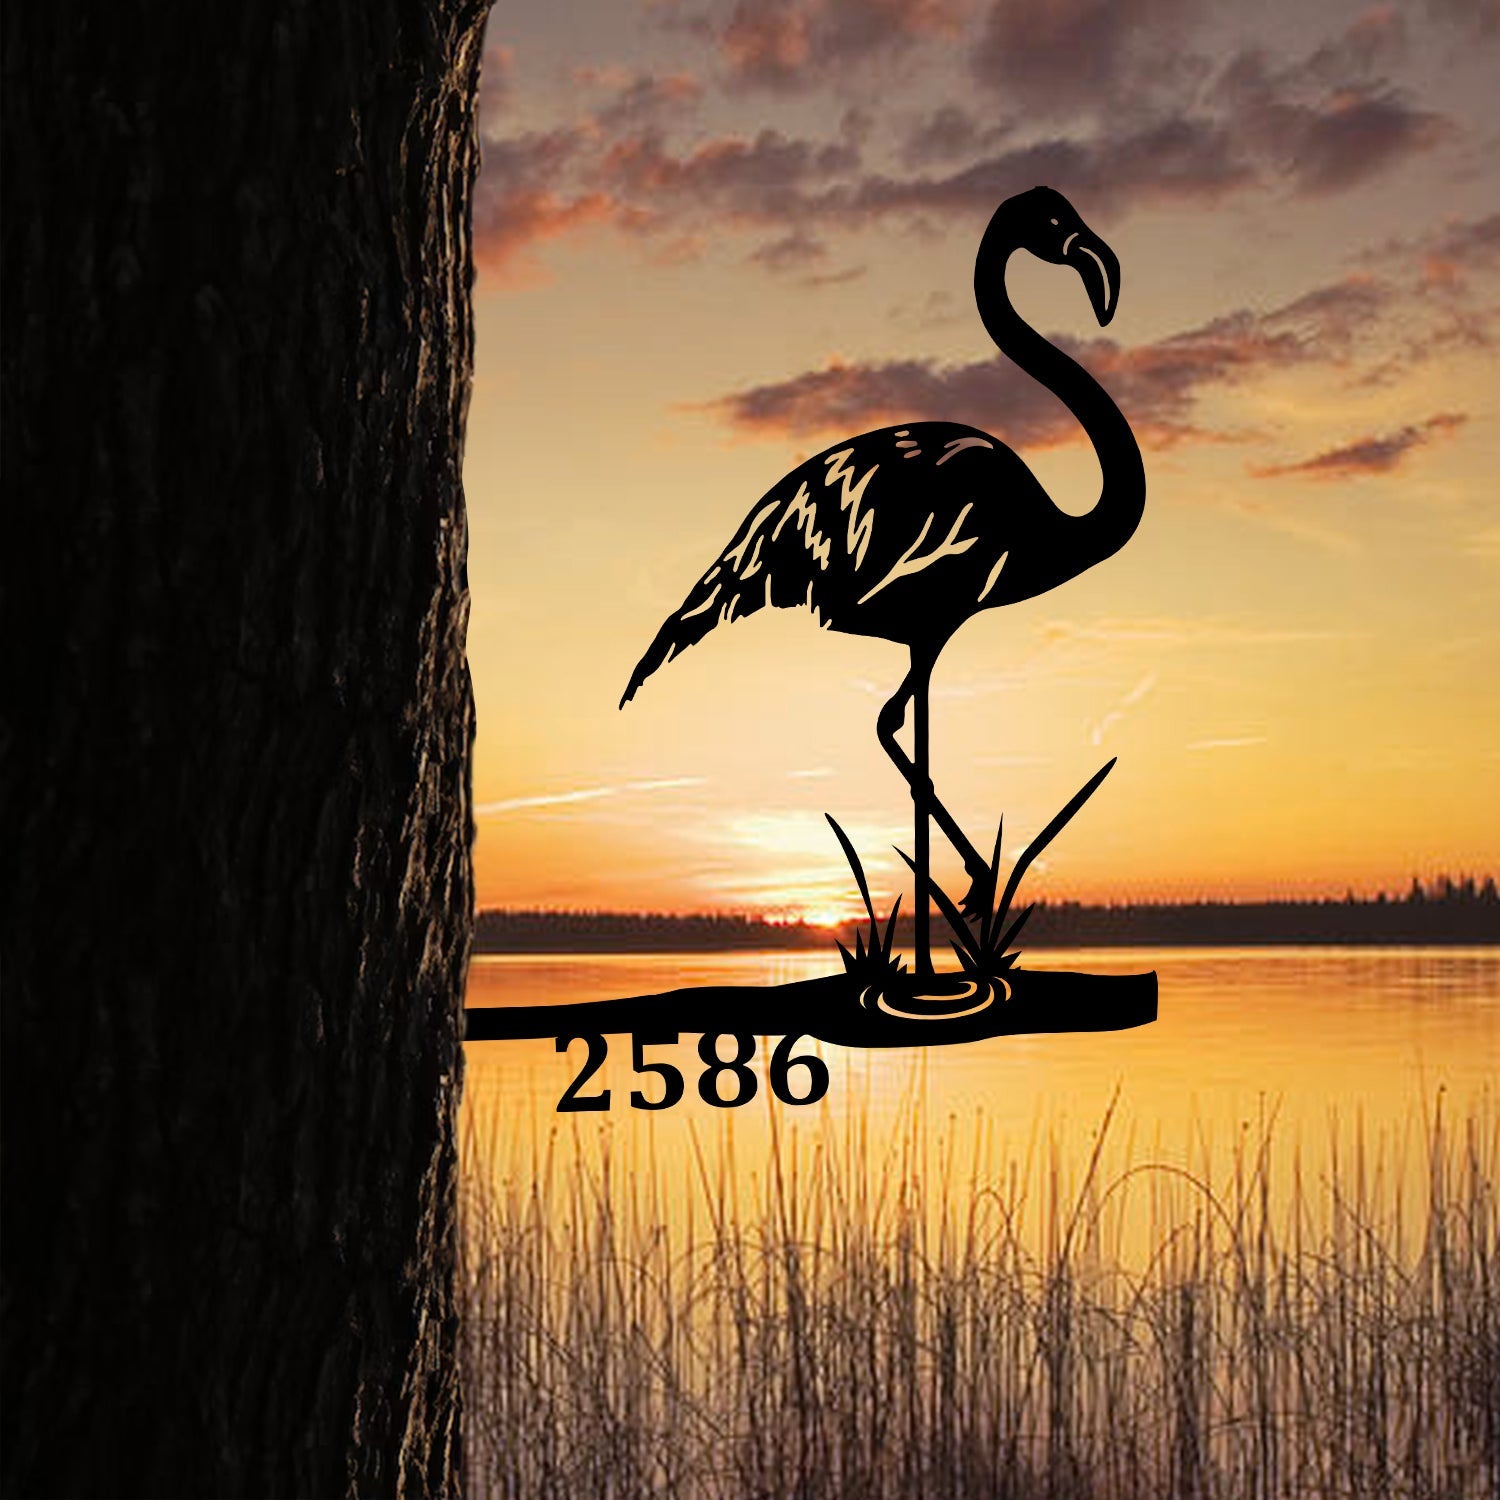 Customized Address Number Flamingo Metal Tree Stake, Metal Garden Art